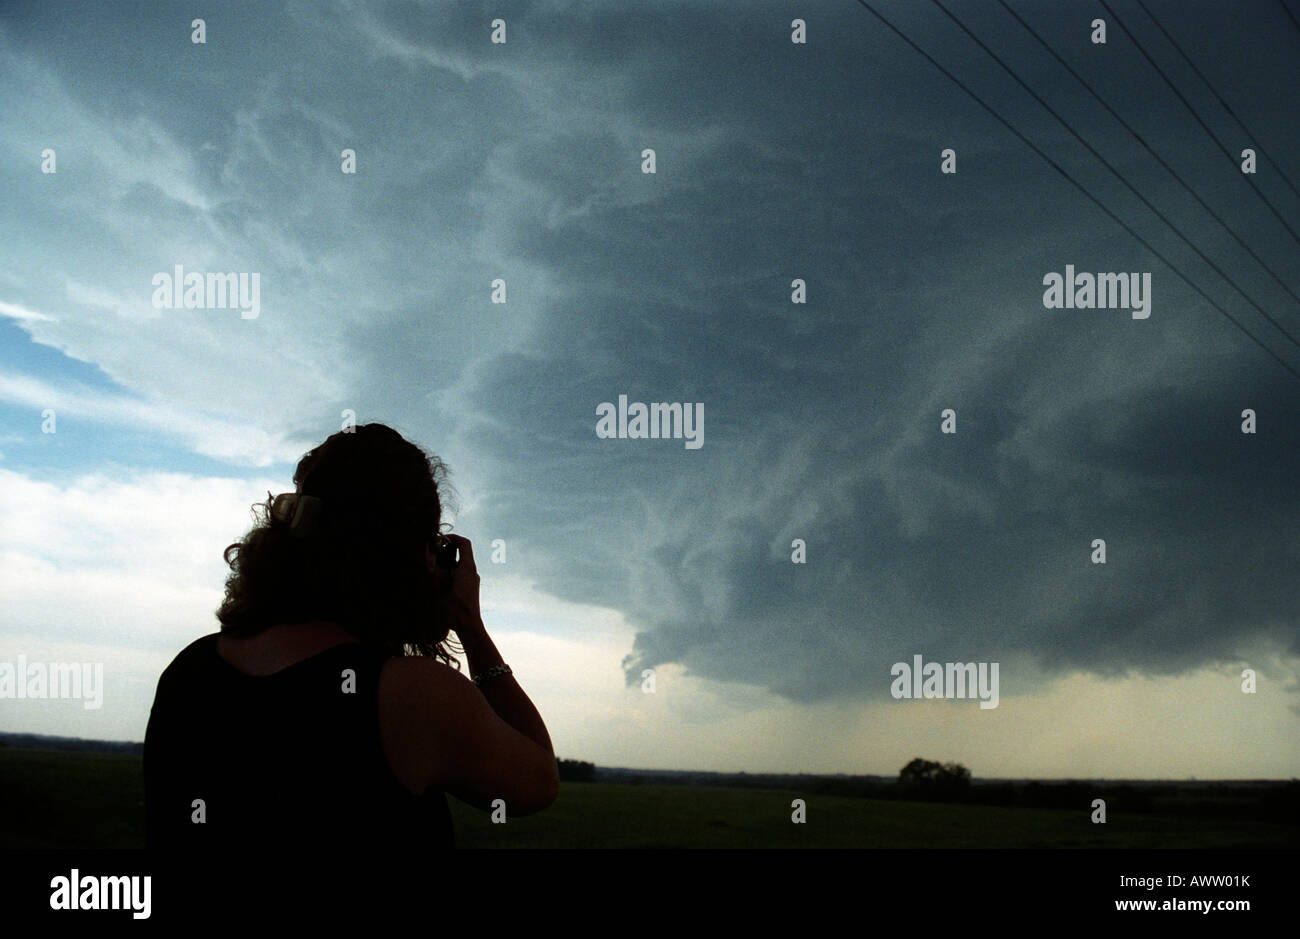 Pulitzer-preisgekrönten Fotografen Krista Niles Fotos vorher tornadischen Superzelle Sturm Jagd. Stockfoto